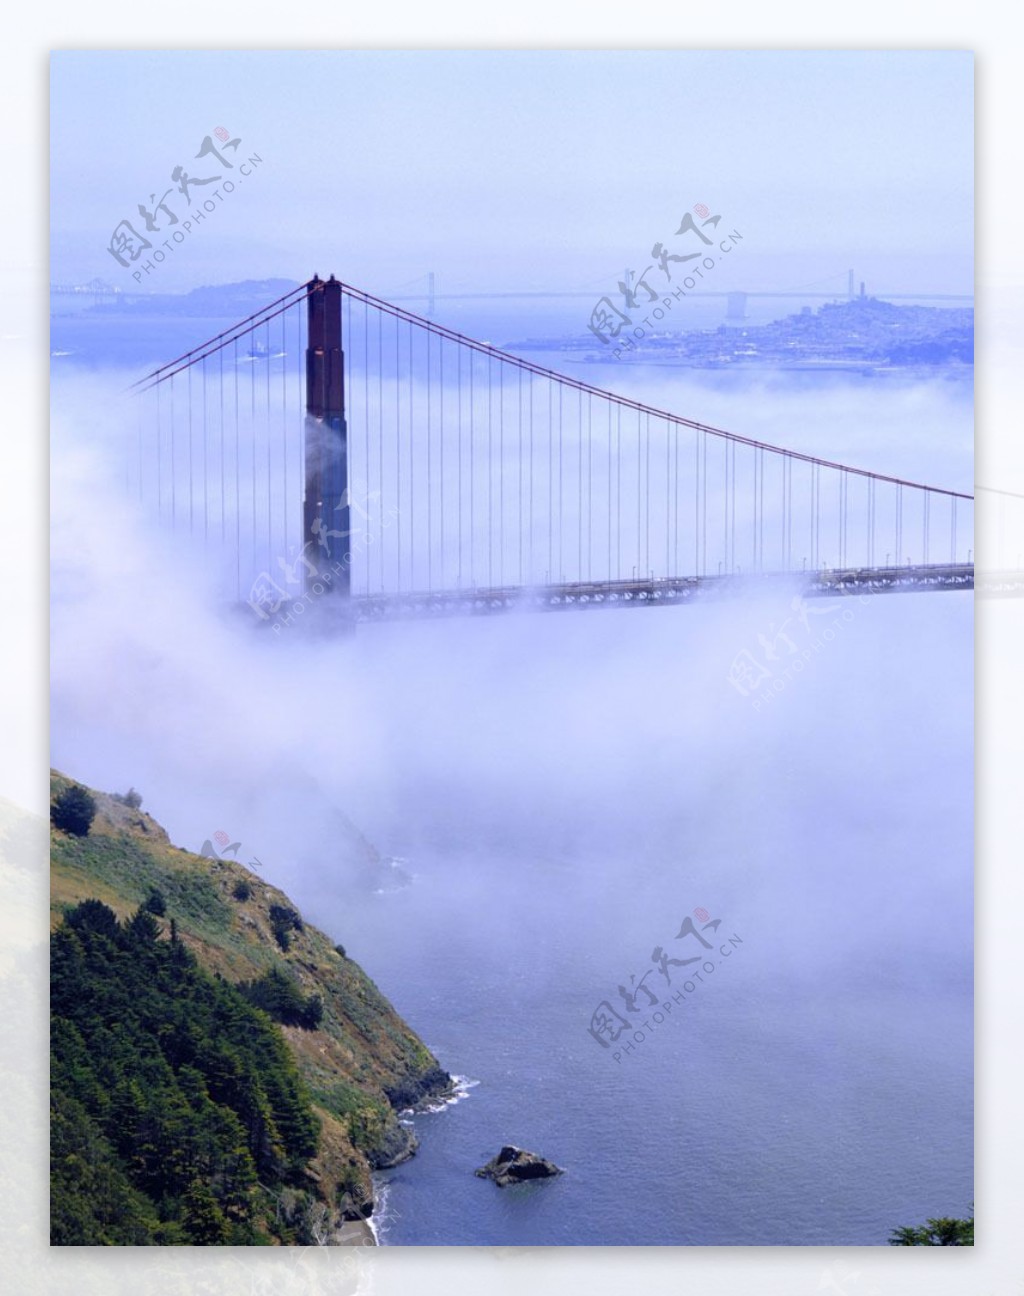 旧金山大桥摄影图片